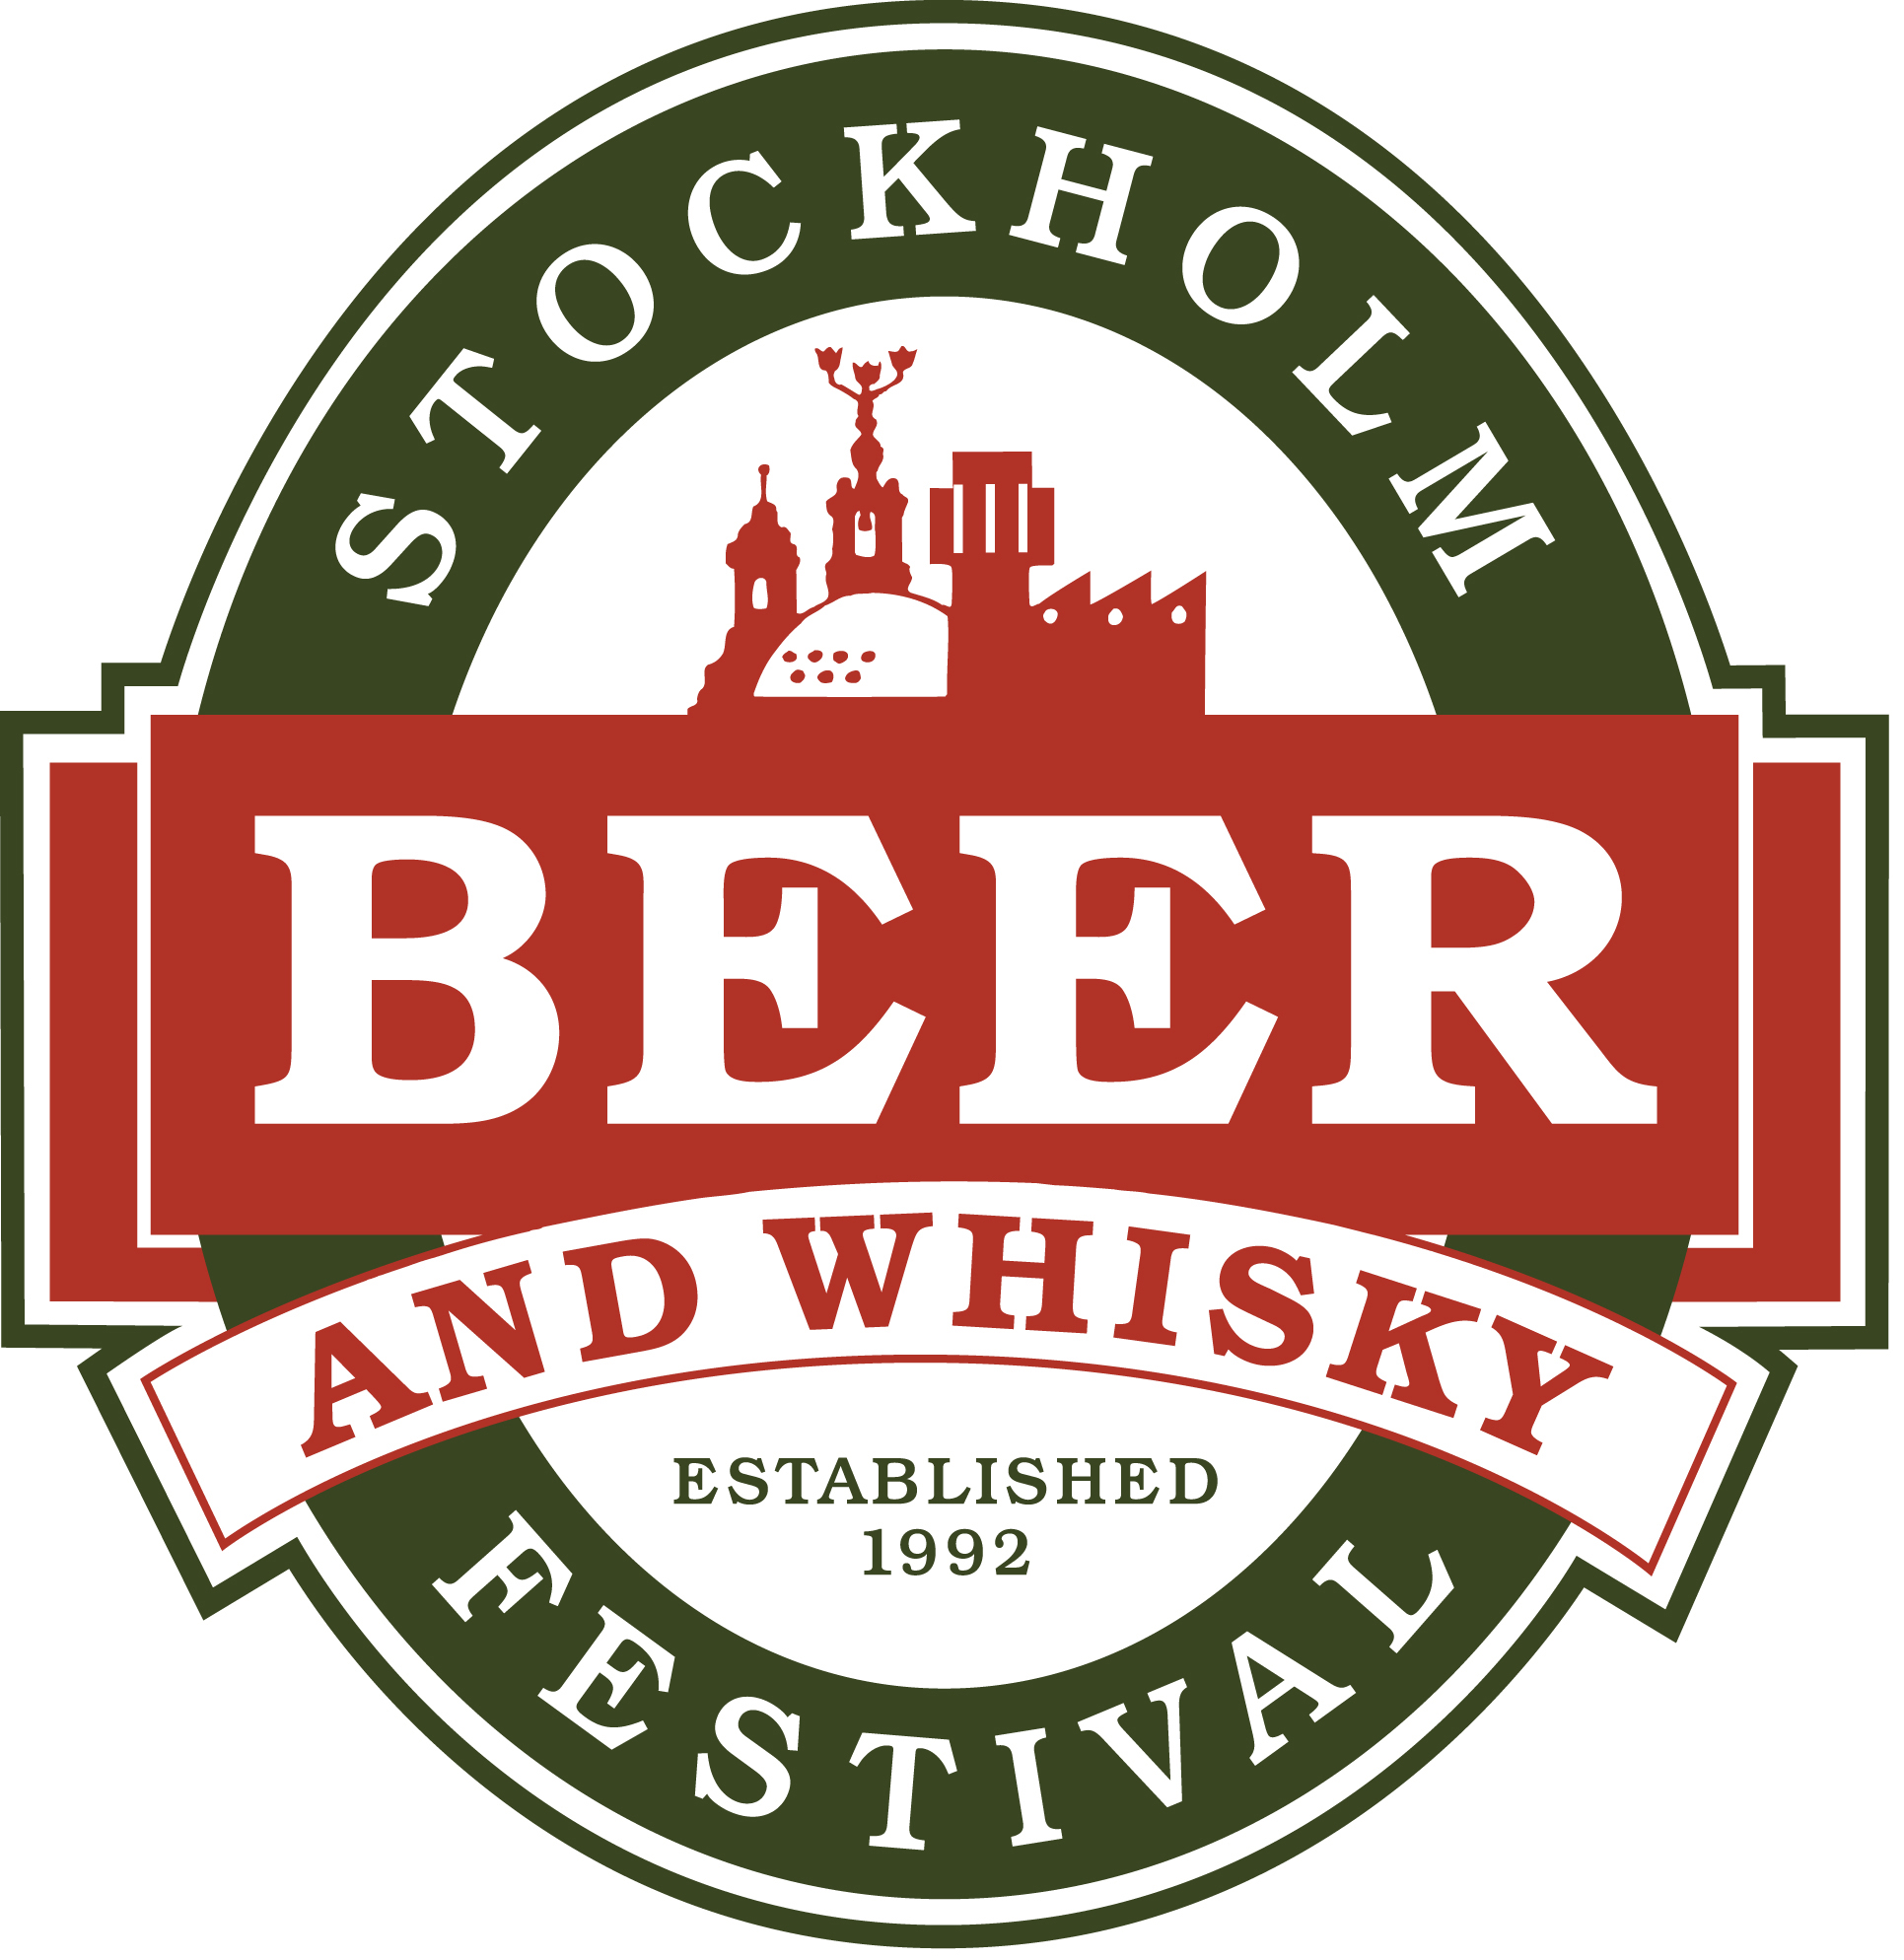 Stockholm Beer & Whisky Festival